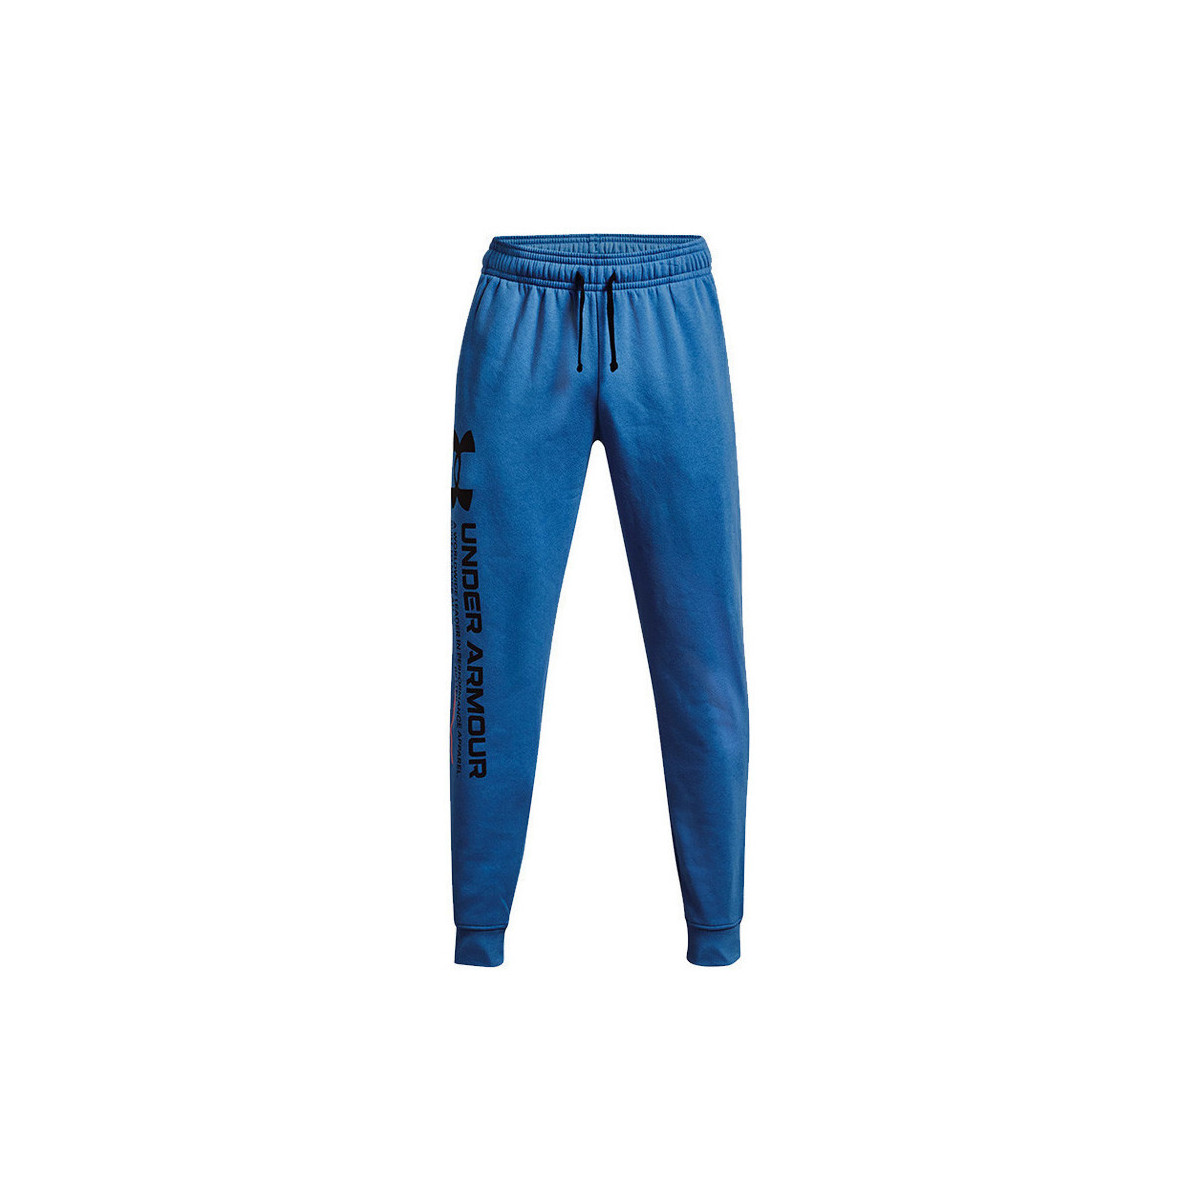 Vêtements Homme Pantalons de survêtement Under Armour RIVAL FLEECE Chroma Bleu